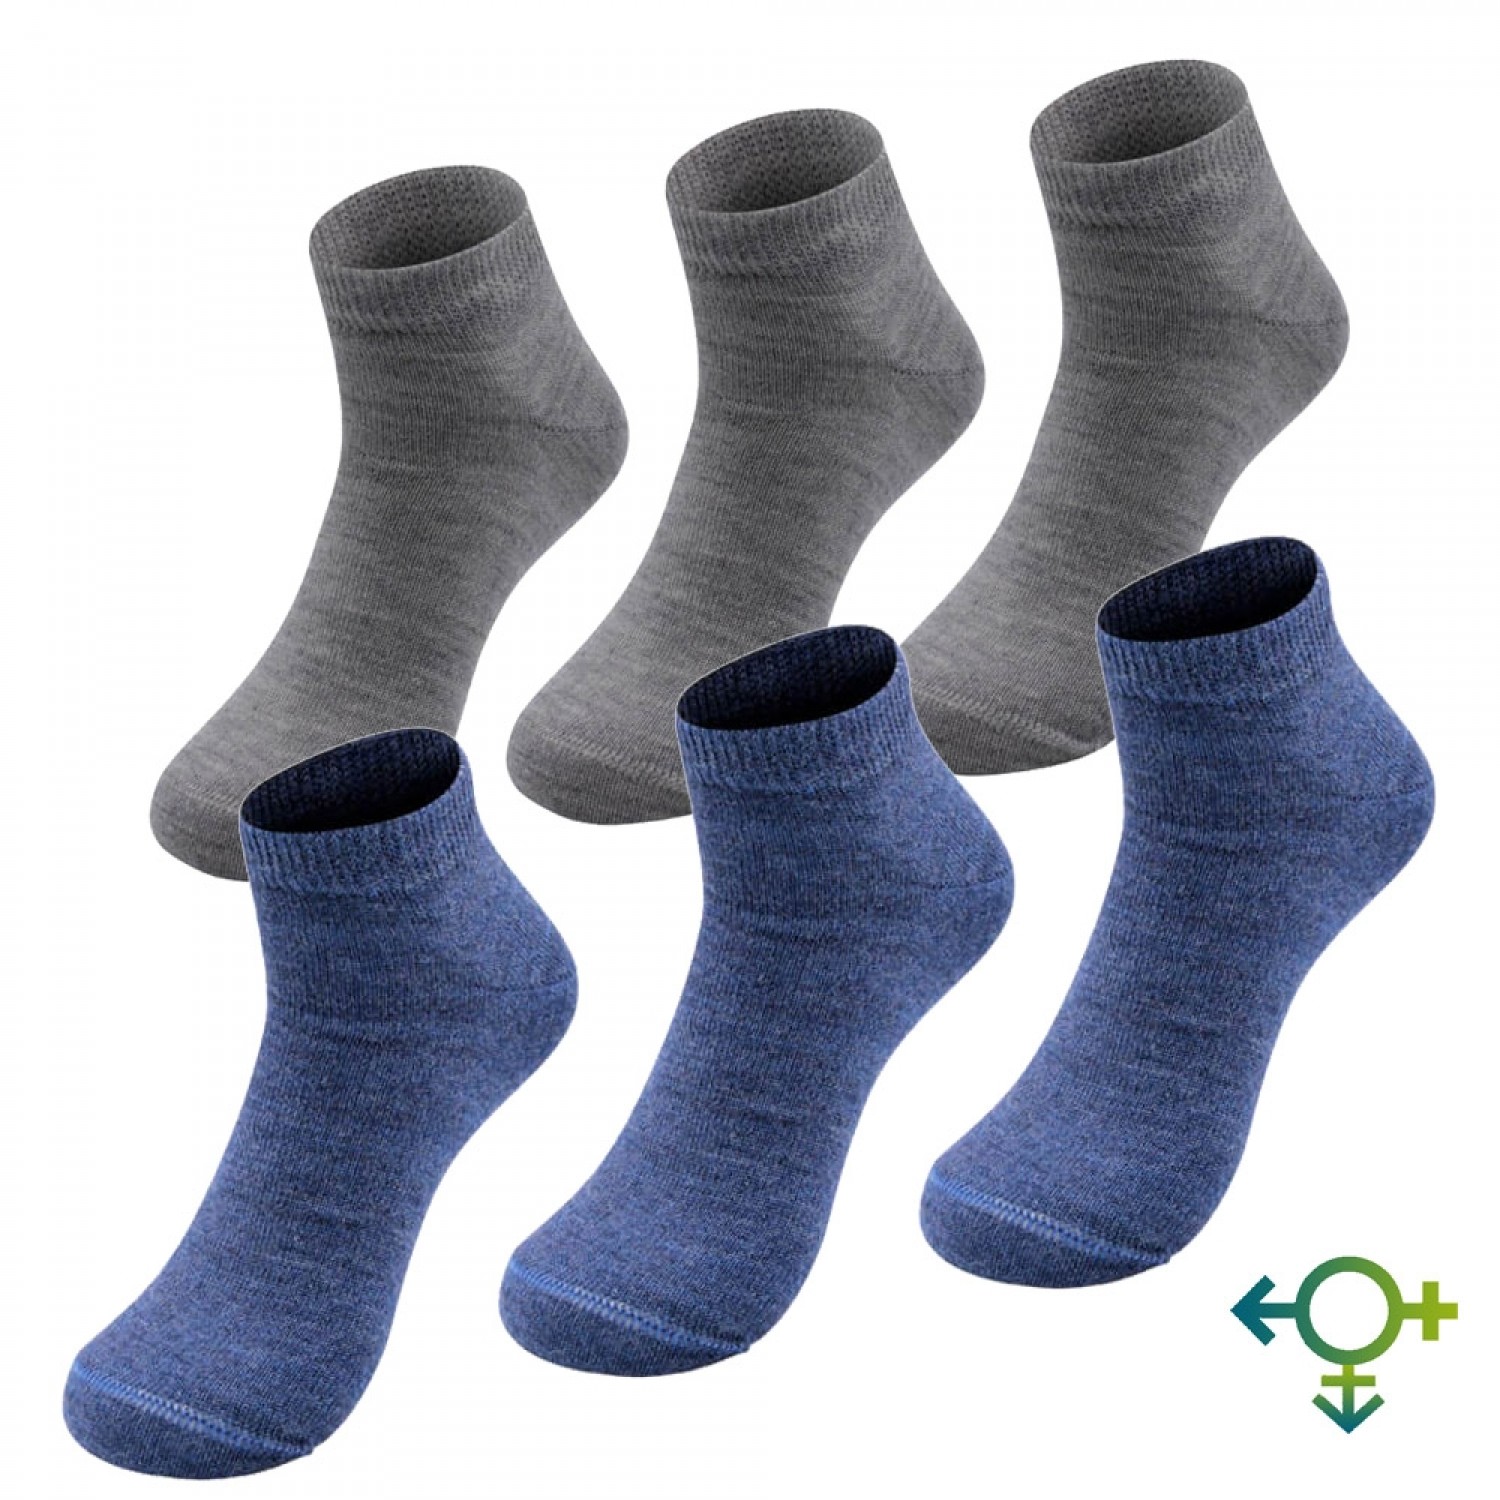 Haltung Socken Neuer Frauen Unsichtbar 3 Pack Socken Grau Neu mit Etikett